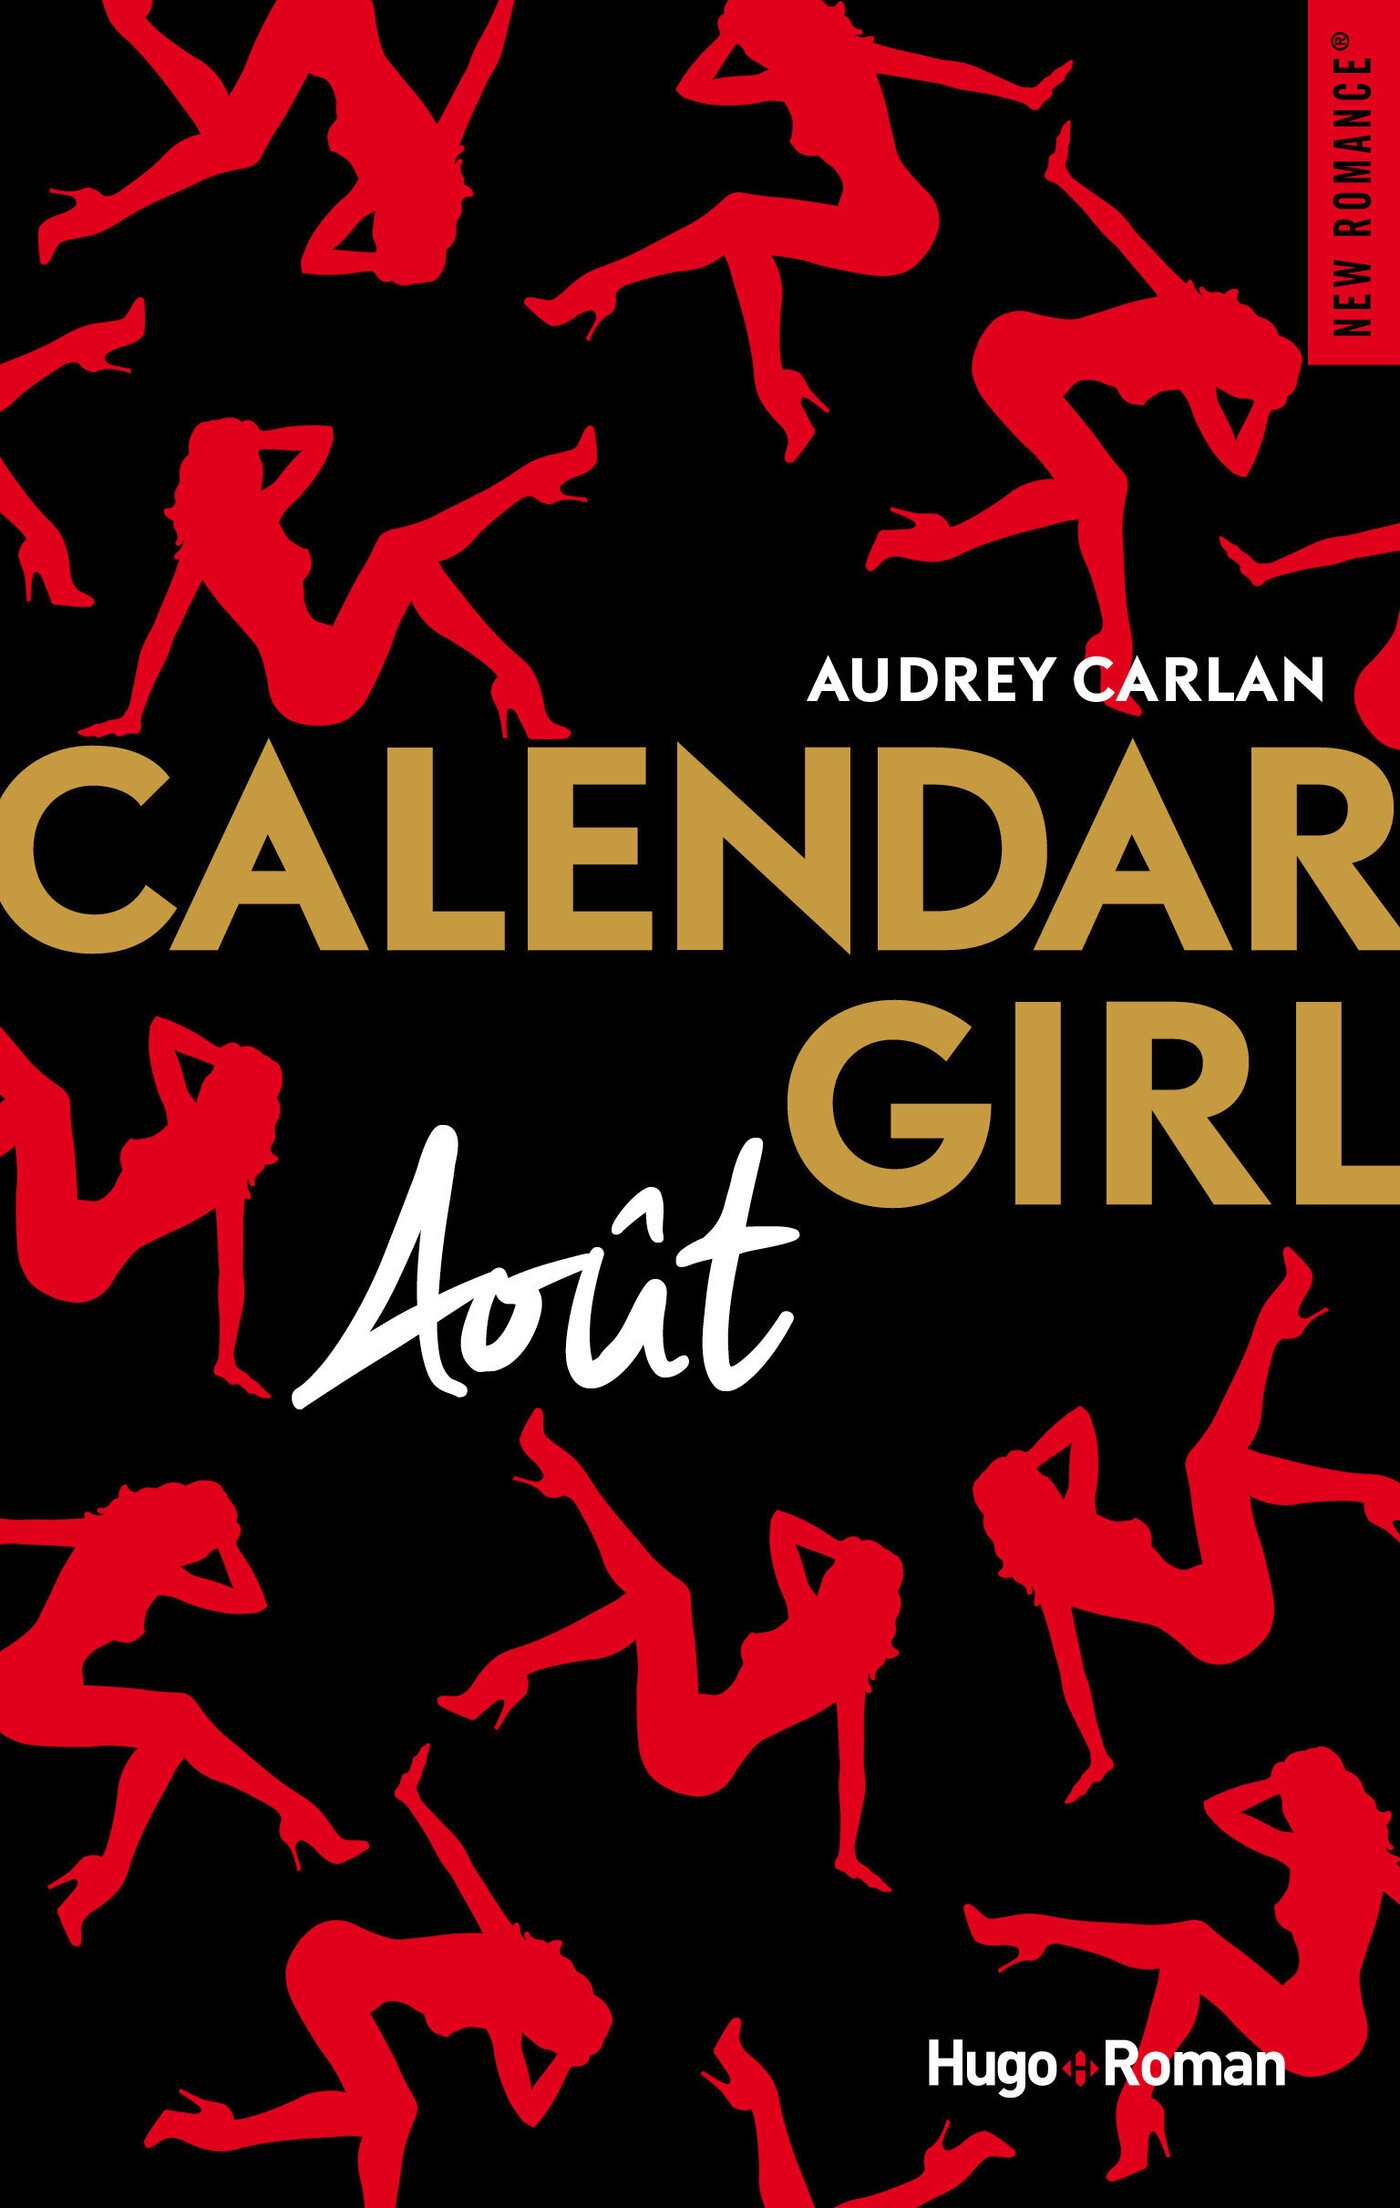 Résultat de recherche d'images pour "aout calendar girl"